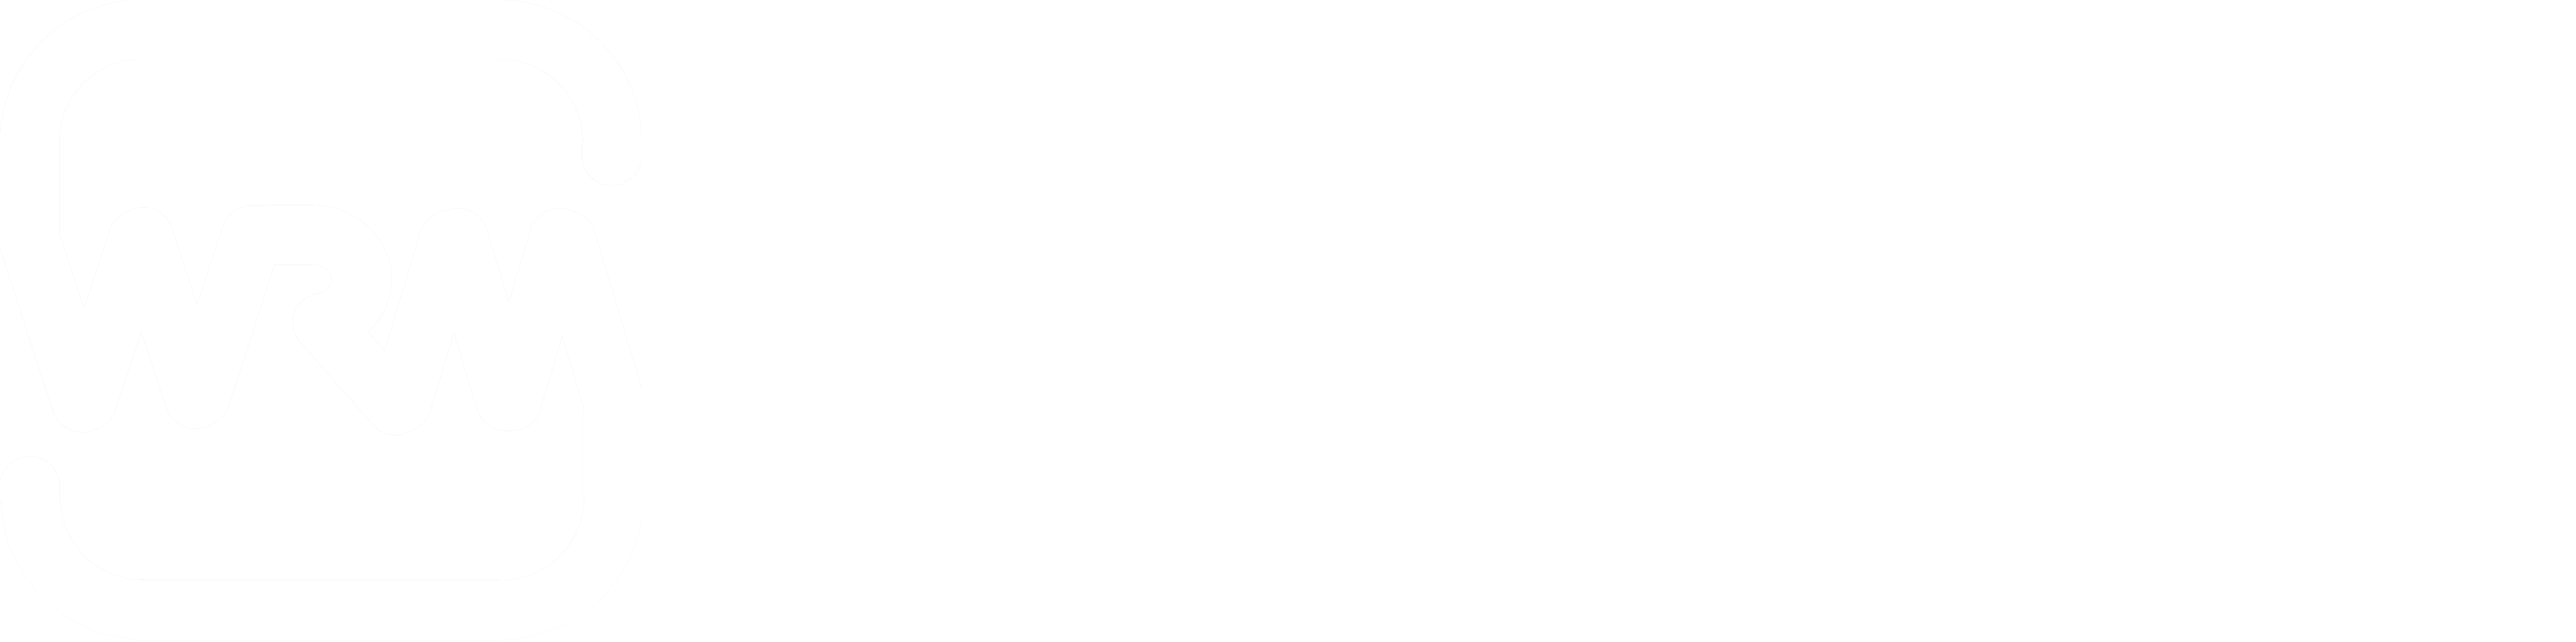 Wilderness Risk Management Conference